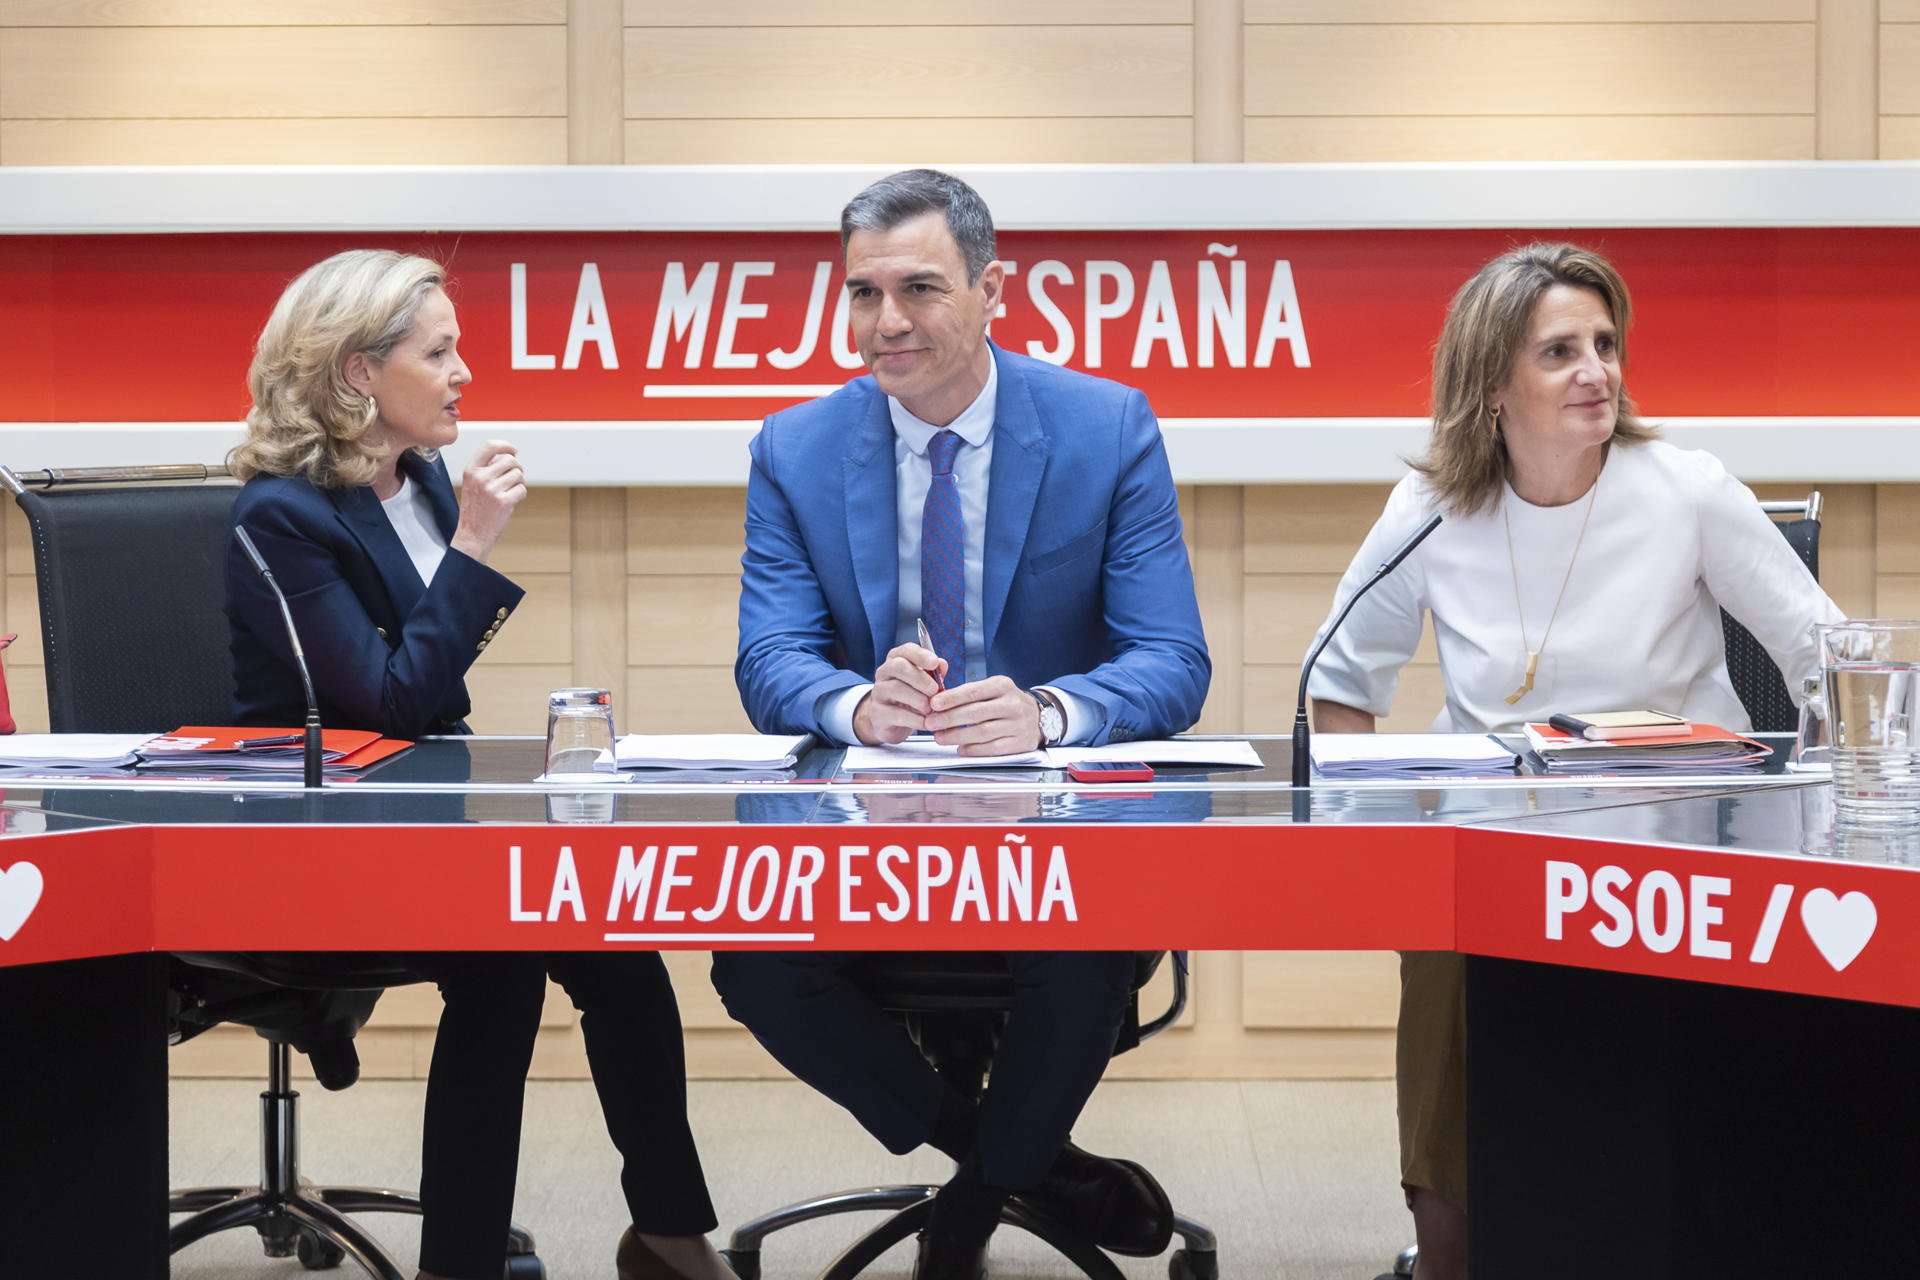 El pacto valenciano de PP y Vox alimenta el discurso del miedo del PSOE: "Es sobrecogedor"